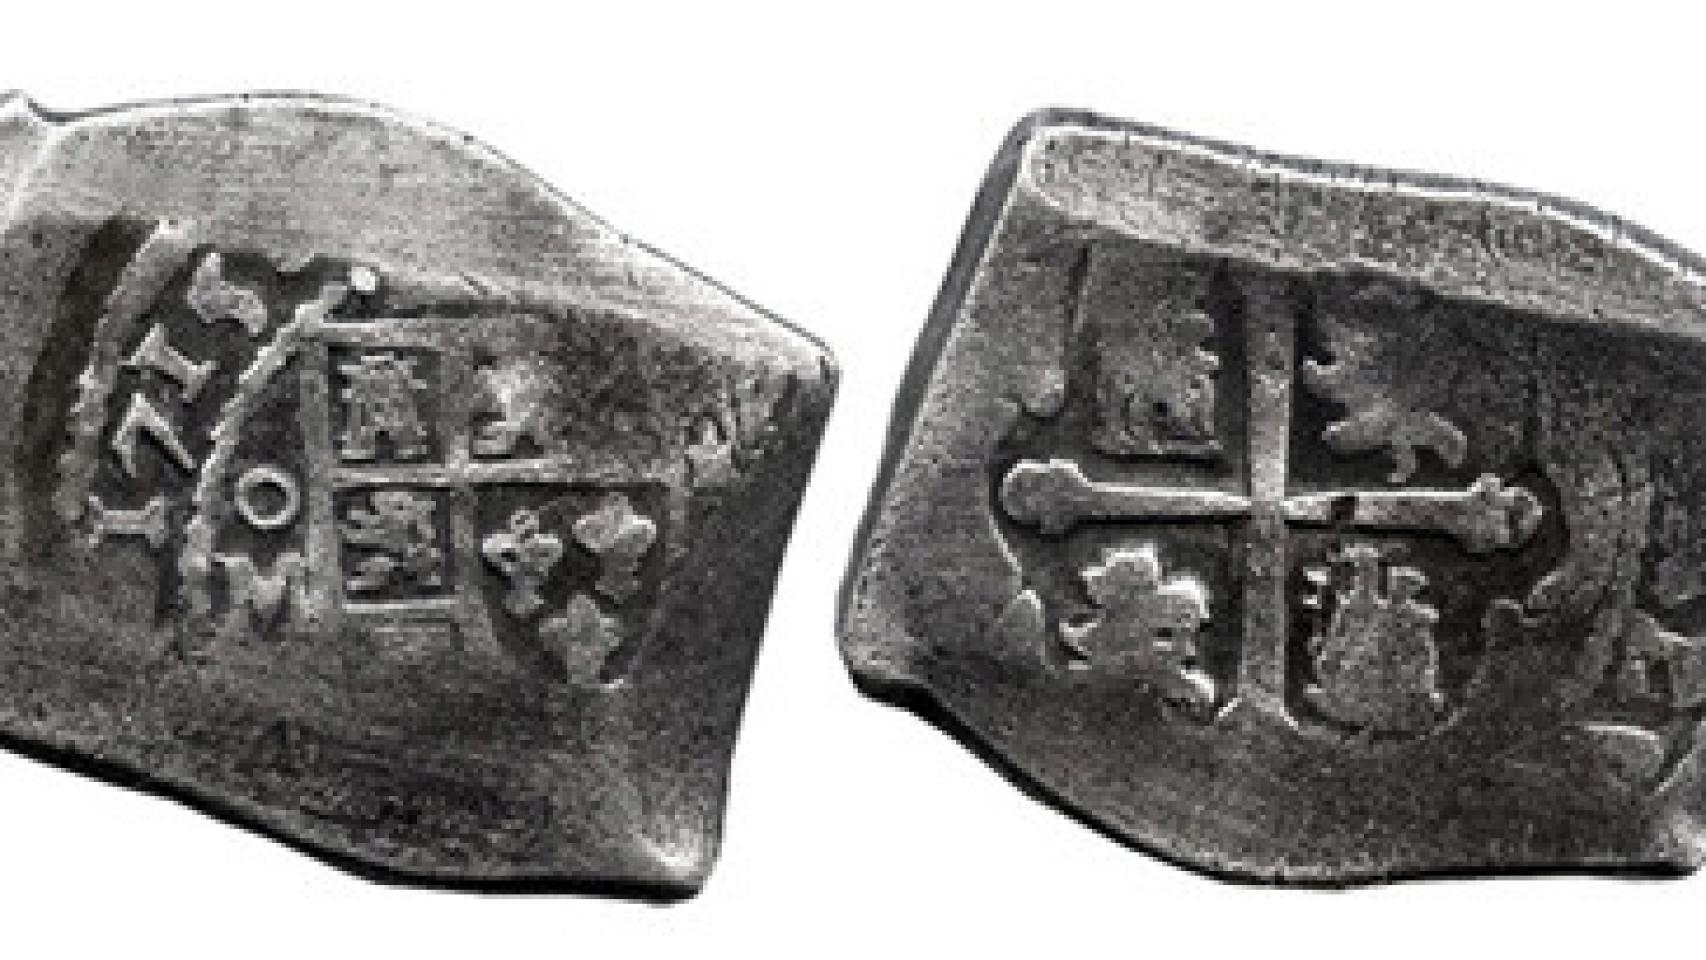 Ocho reales de plata recuperados de la flota de Indias de 1715